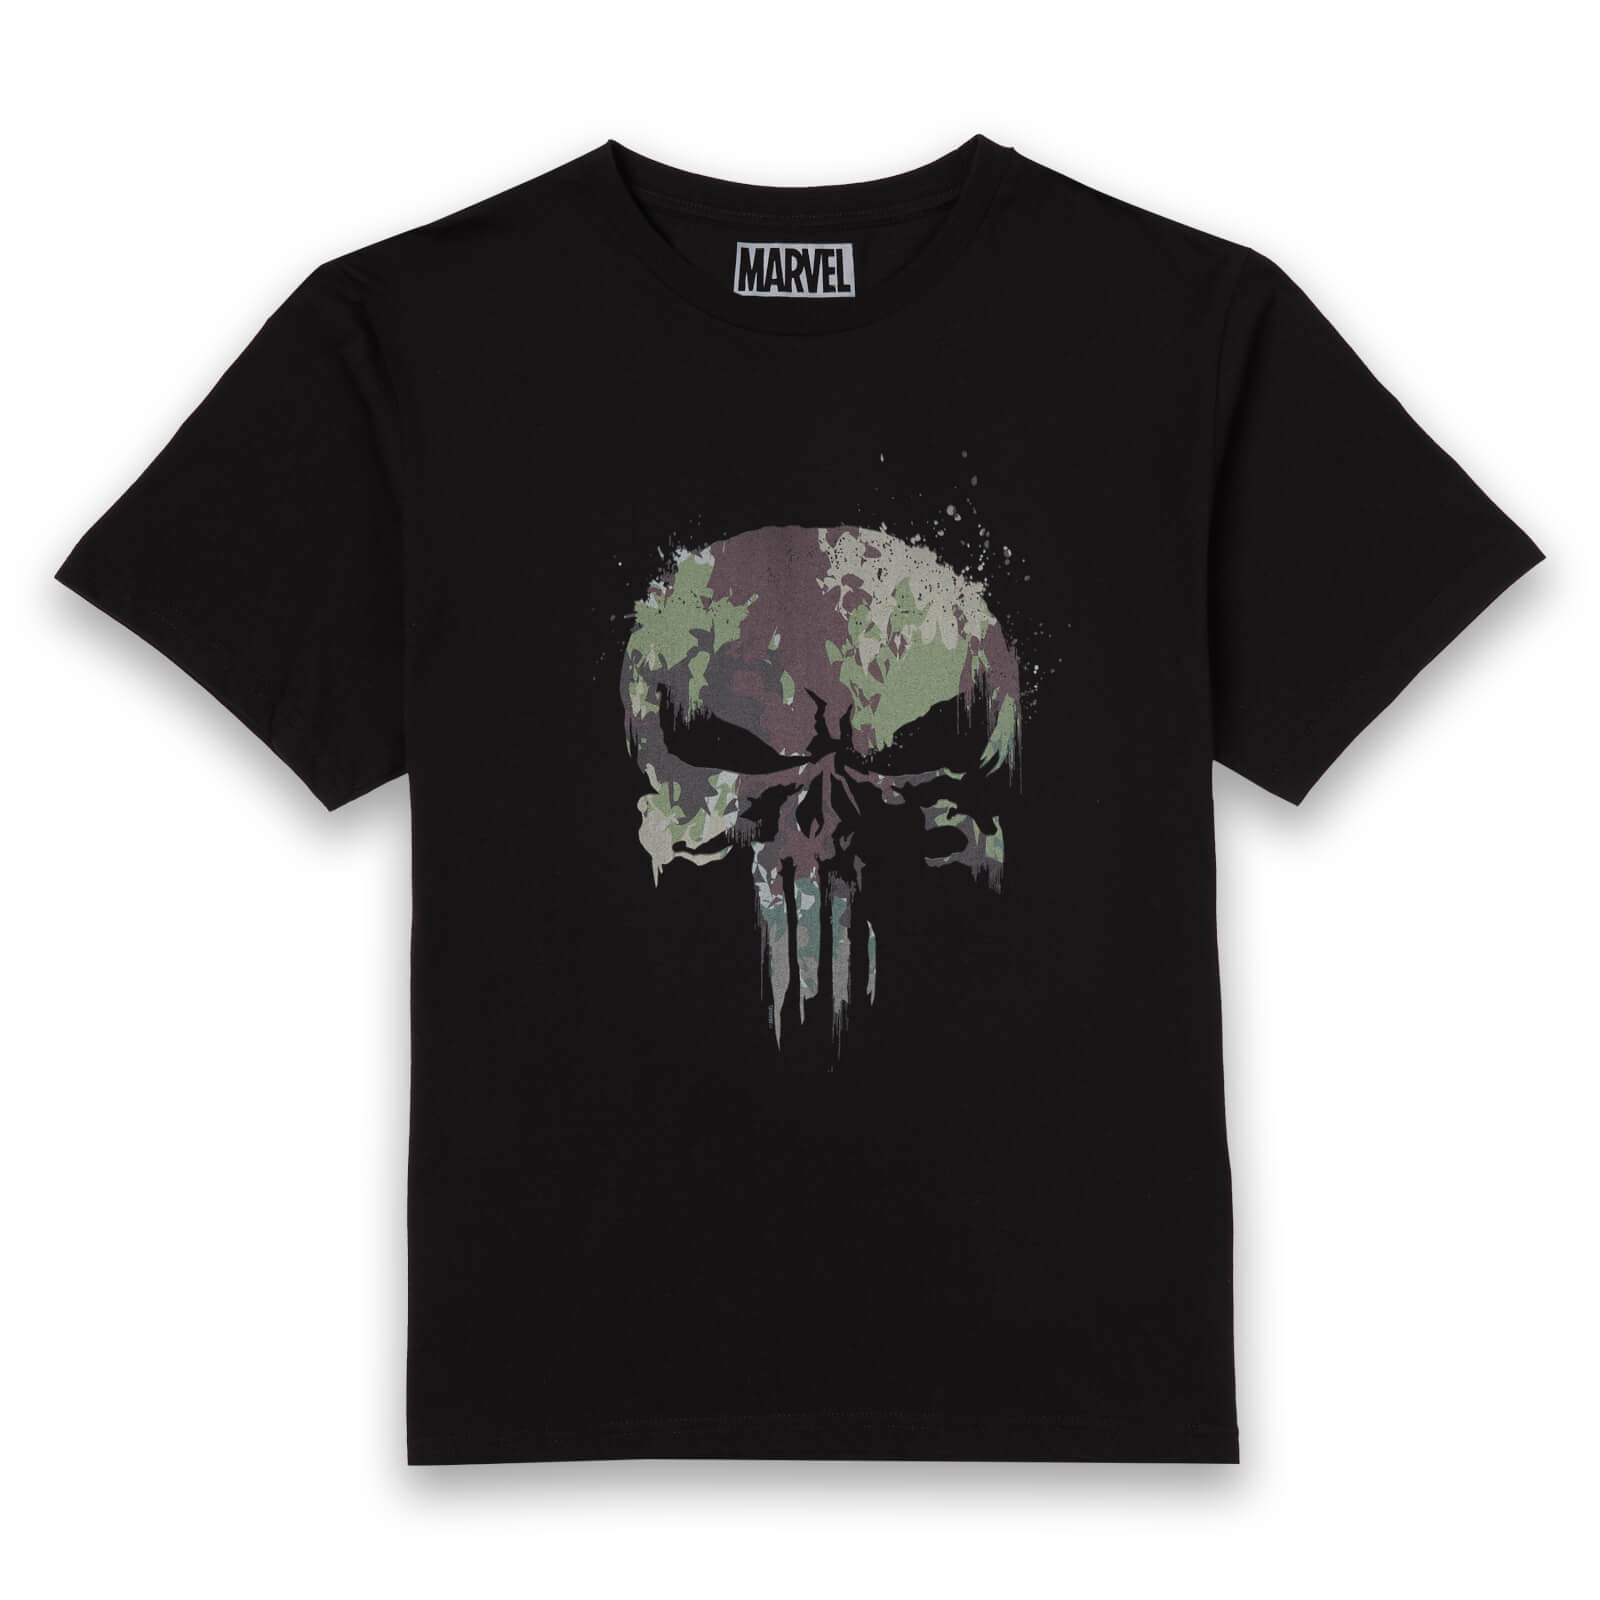 Marvel Camo Skull Men's T-Shirt - Black - S